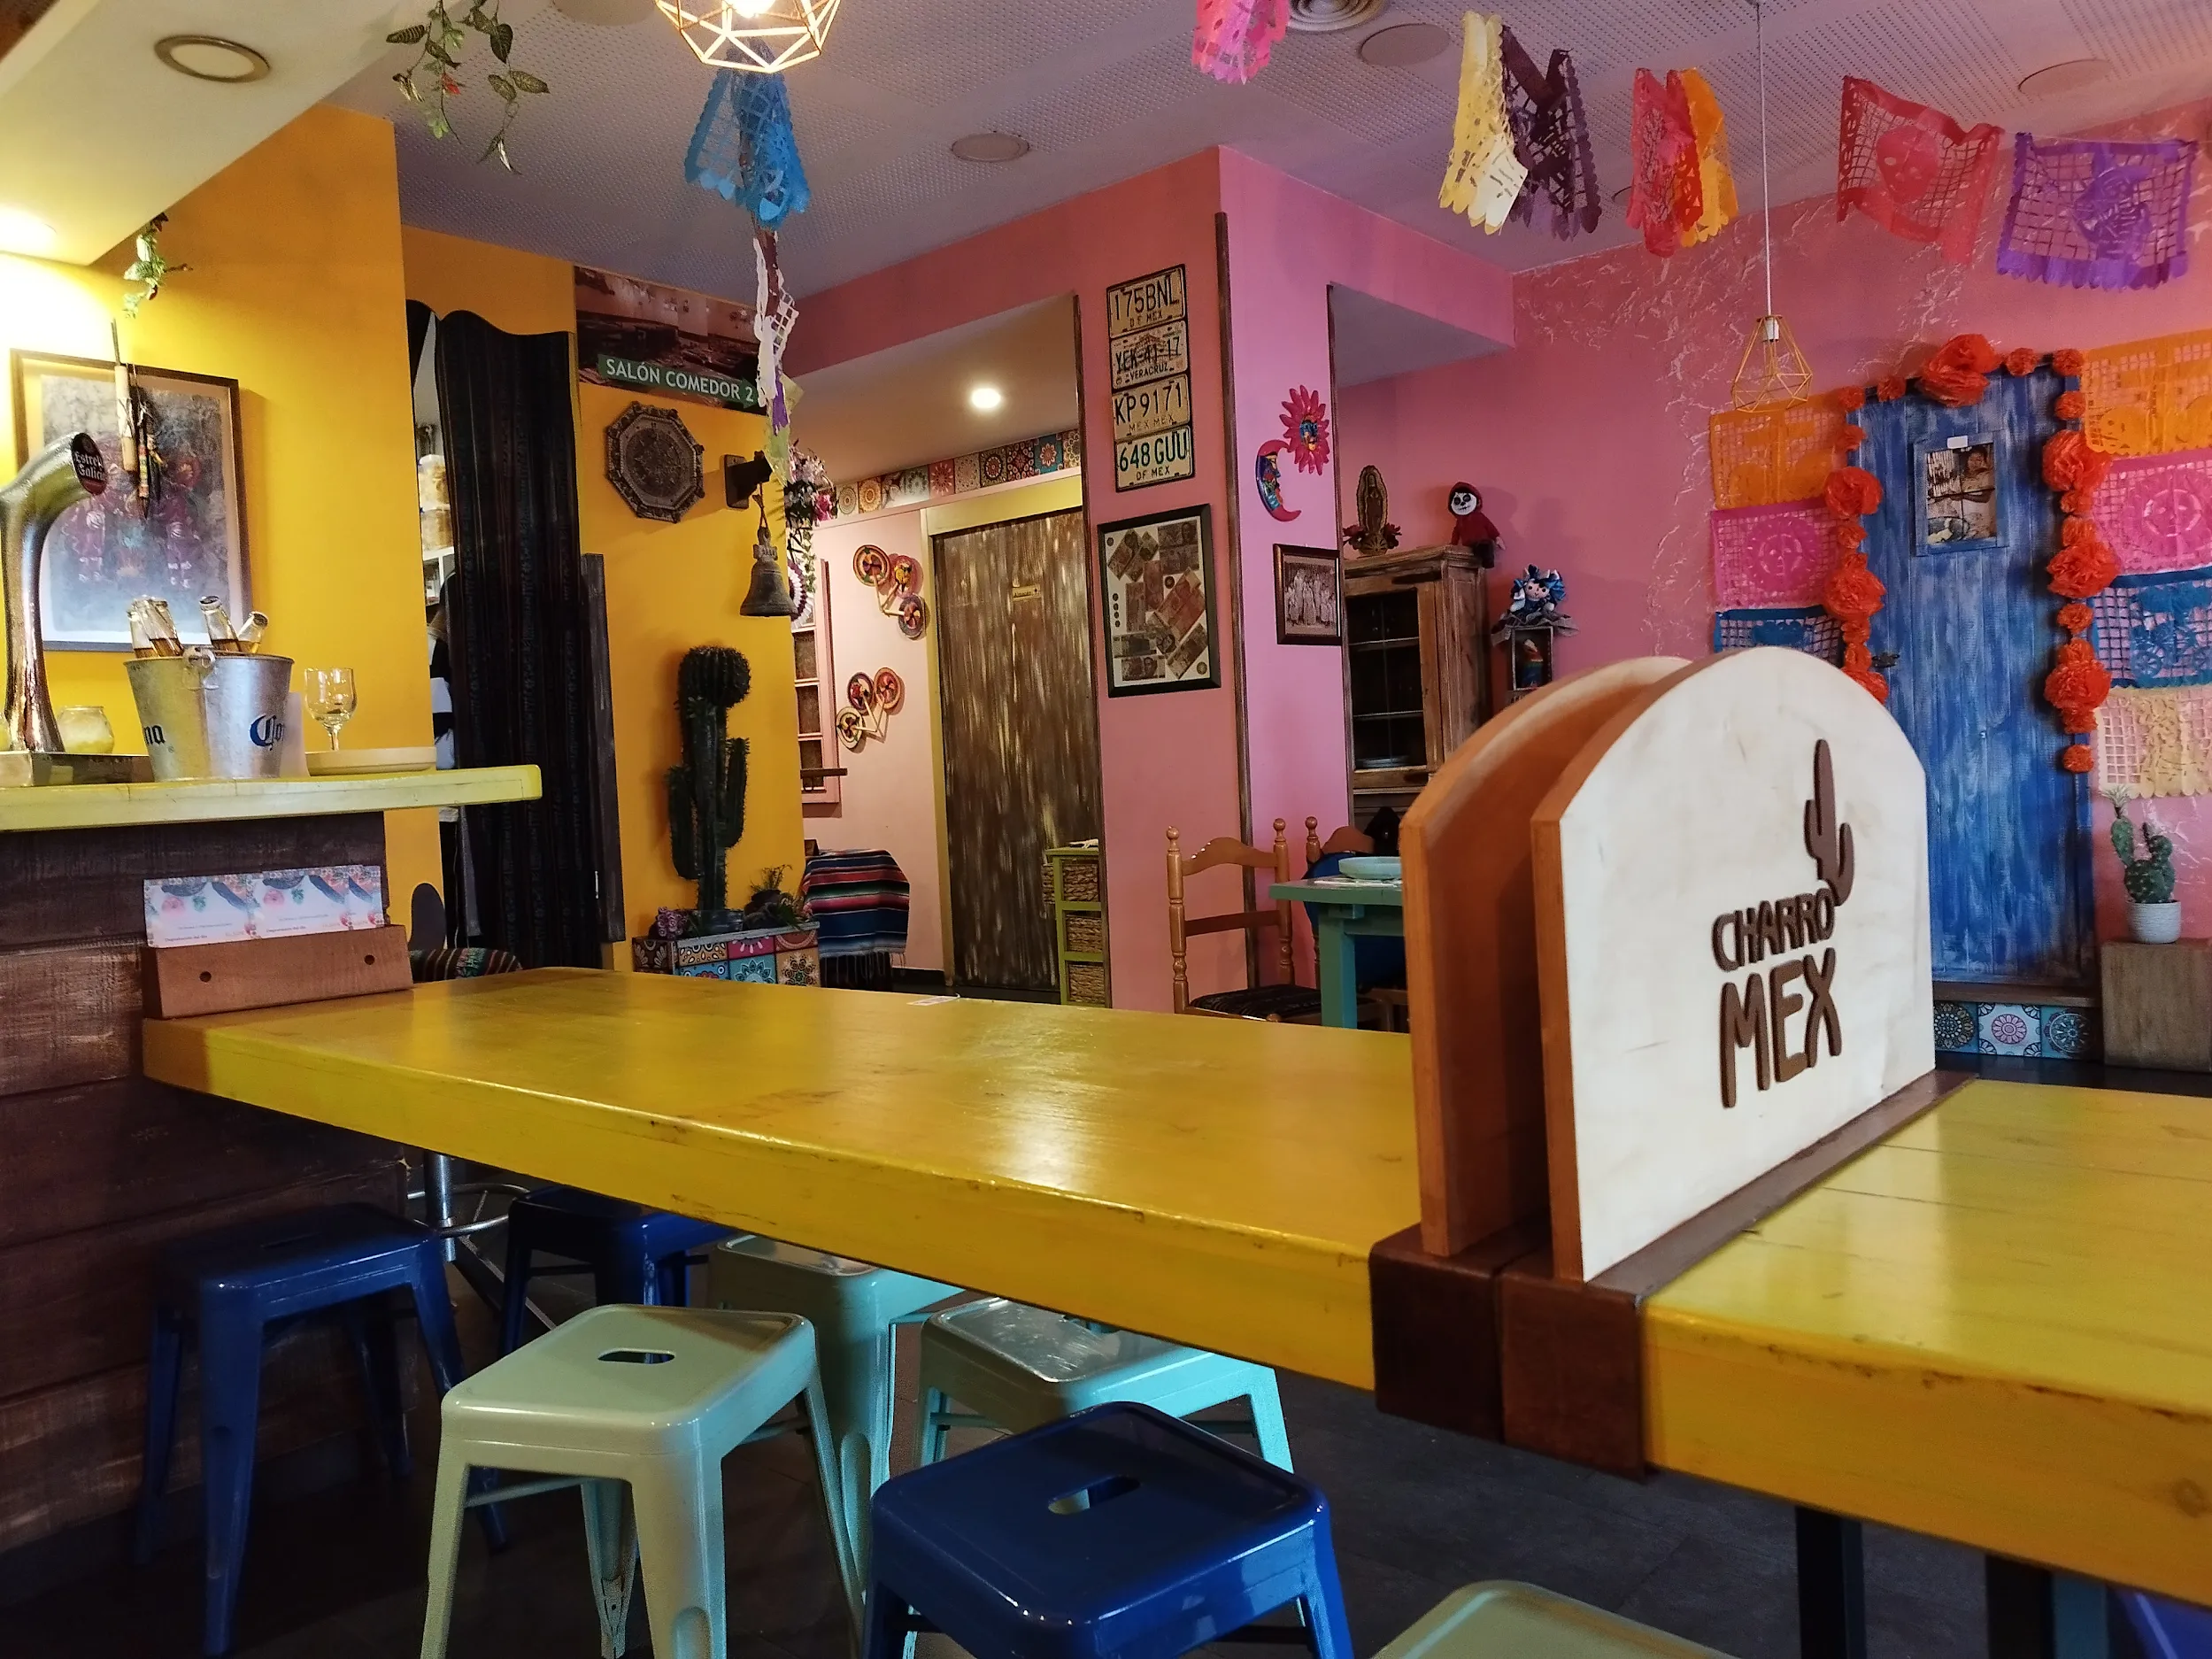 restaurantes mexicanos lugo charro mex